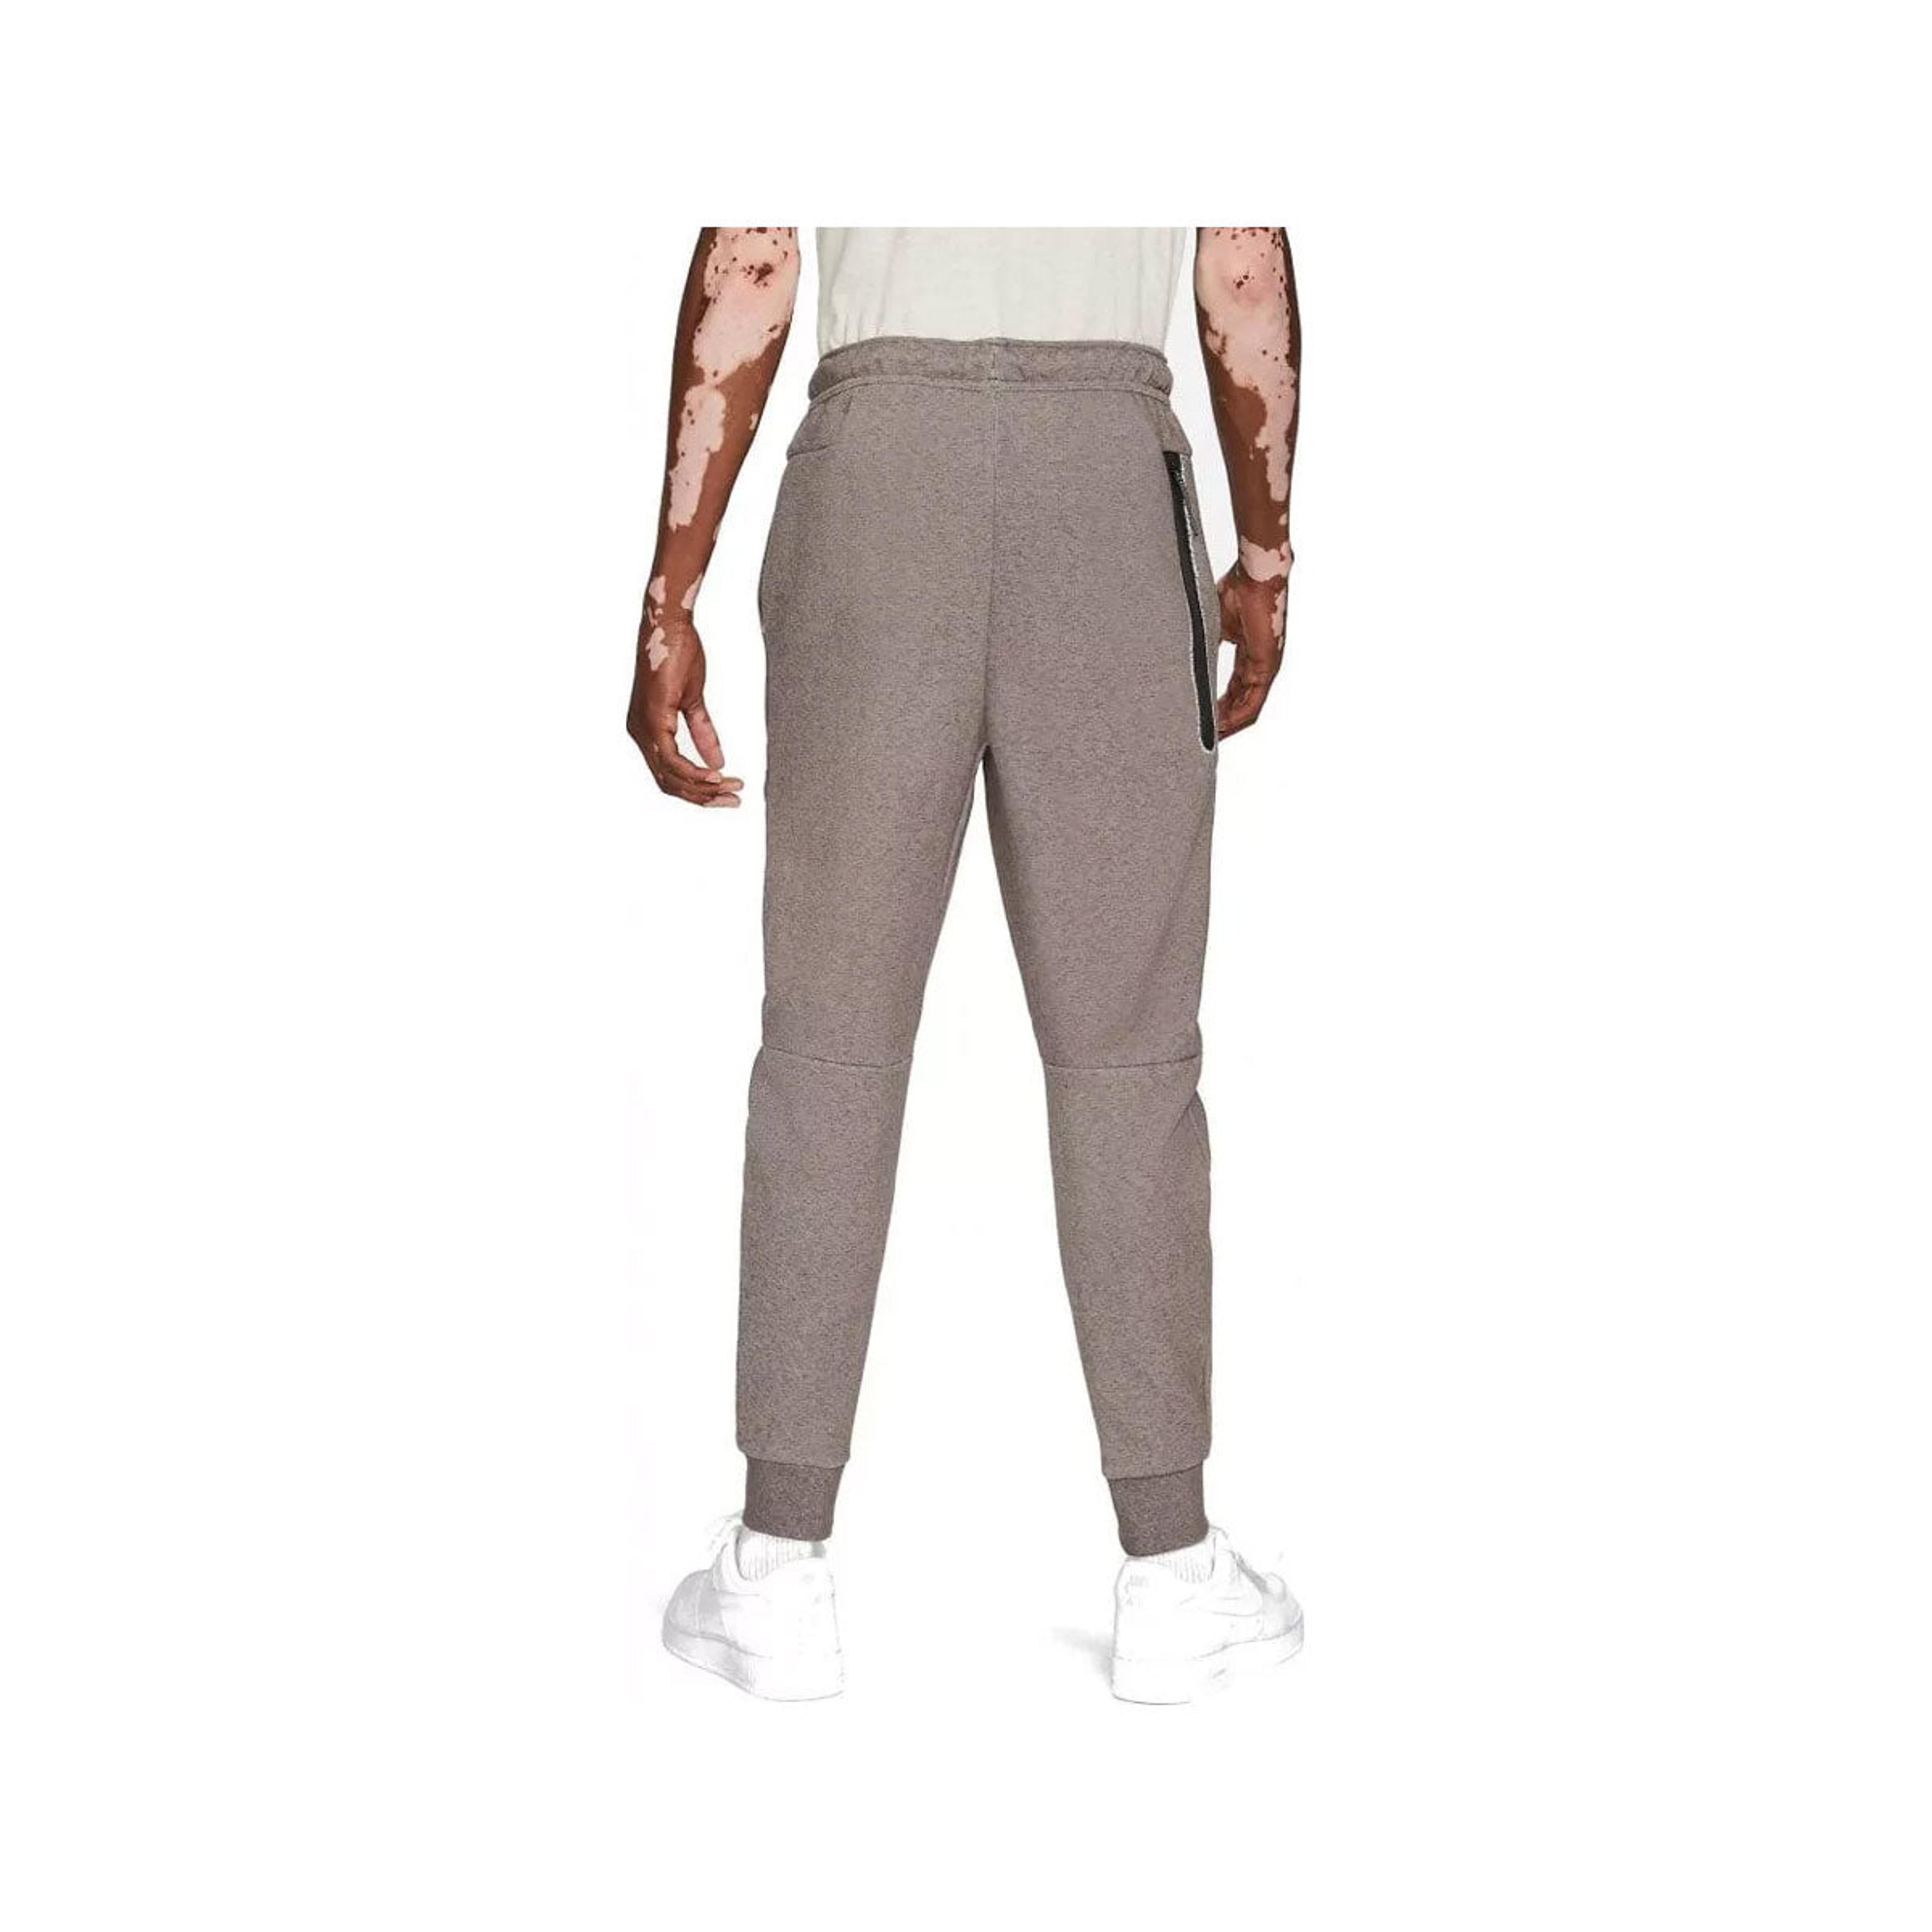 Alternate View 1 of Nike Men's Sportswear Tech Fleece Joggers